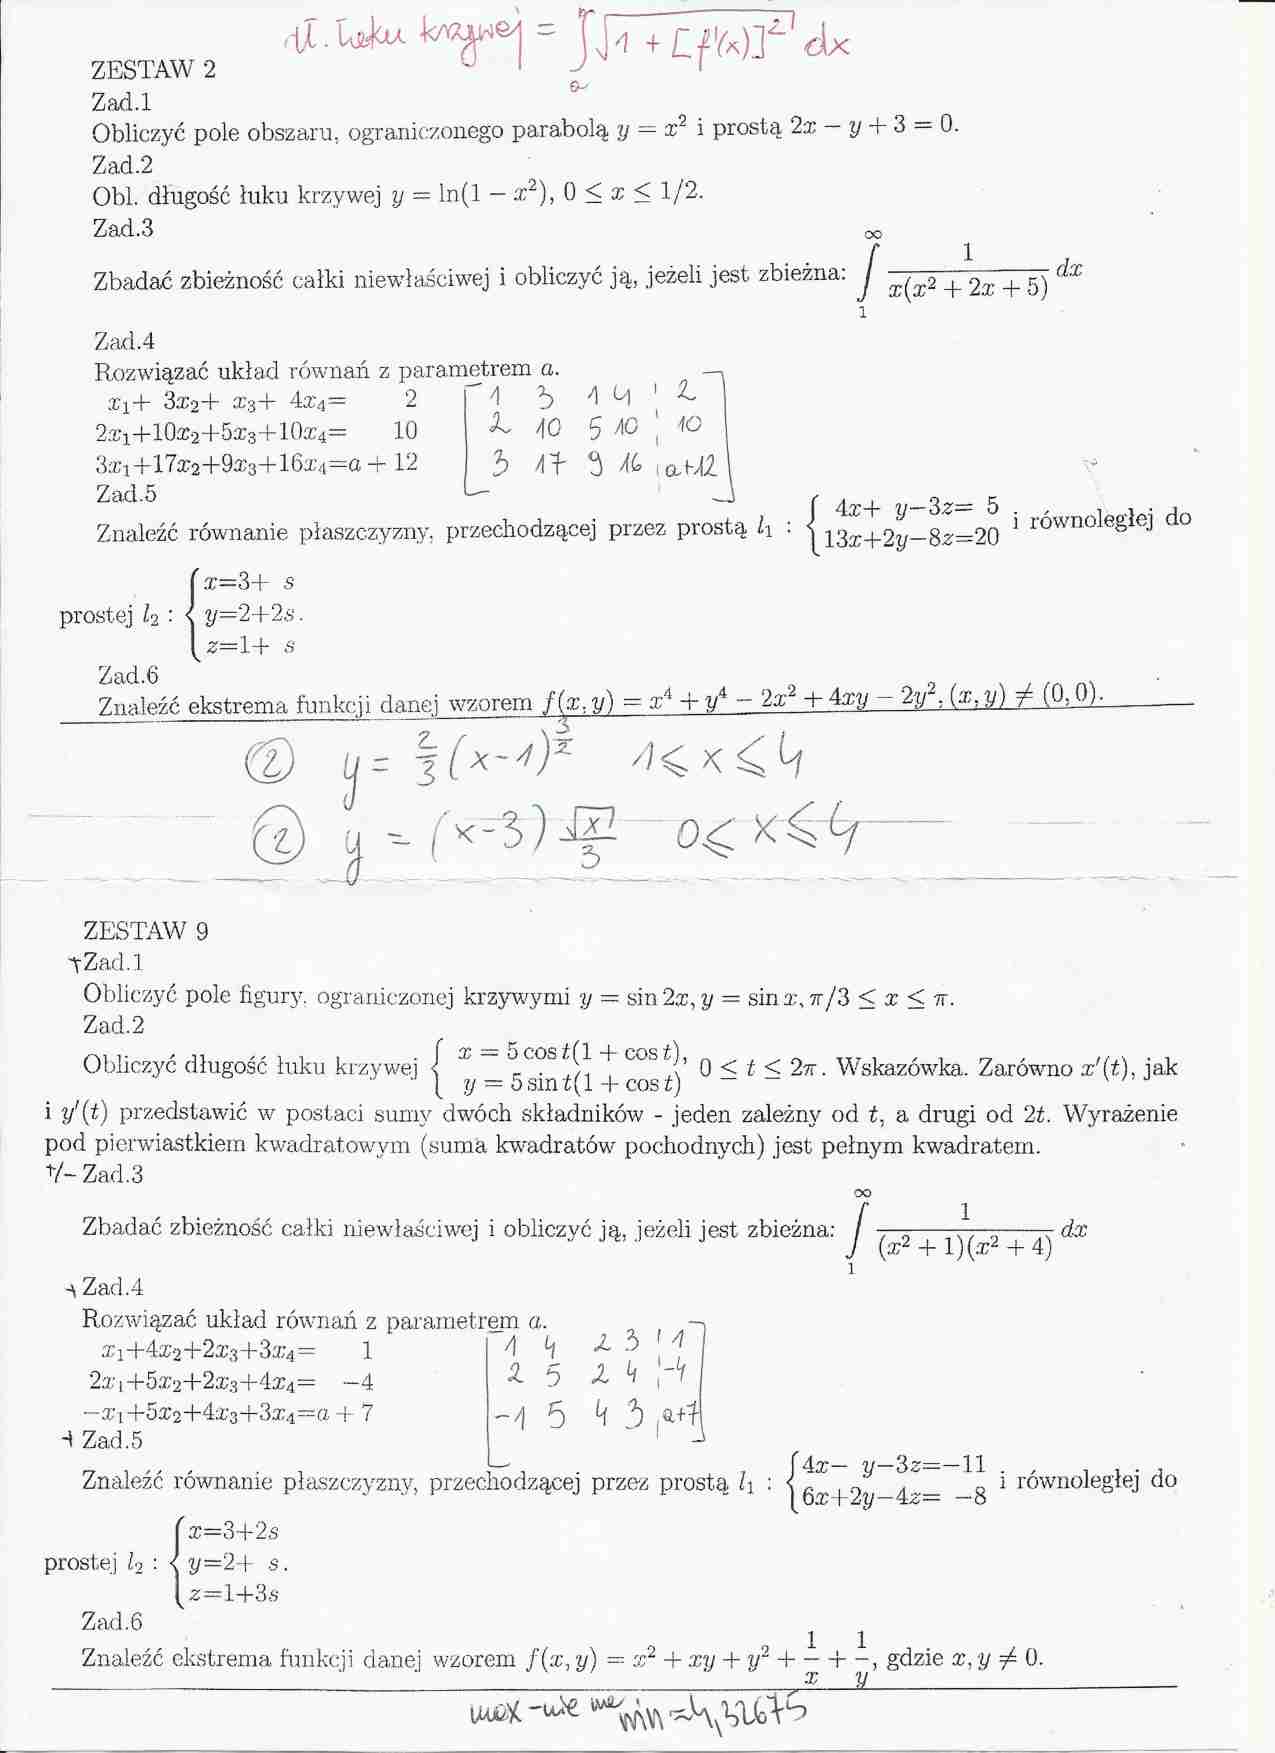 Przykładowe zadania na kolokwium z matematyki - sem 1 - strona 1